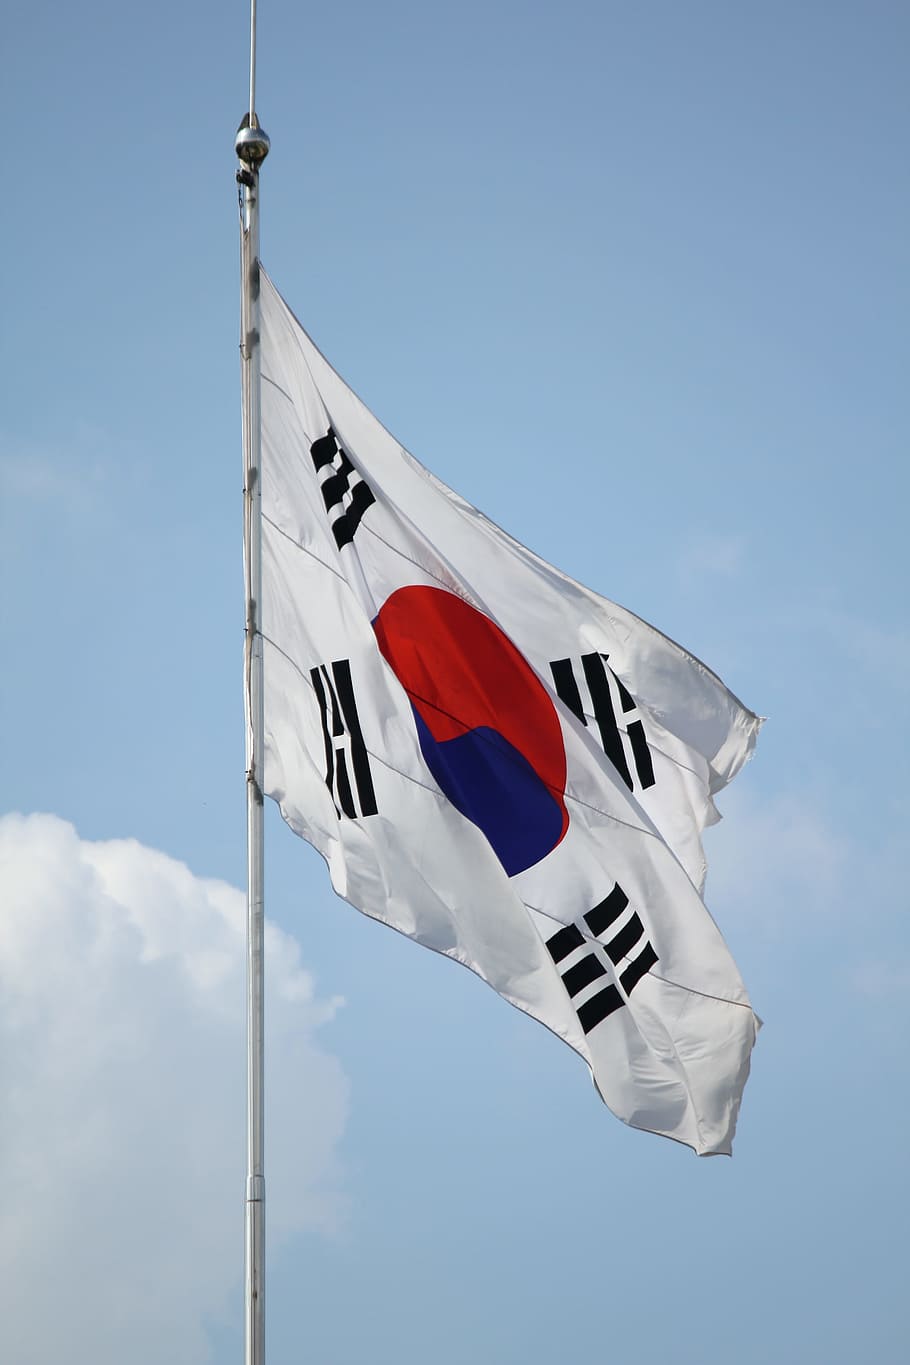 bendera korea, Republik Korea, Julia Roberts, Angin, lalat gandum, bendera, negara, merah, biru, warna putih